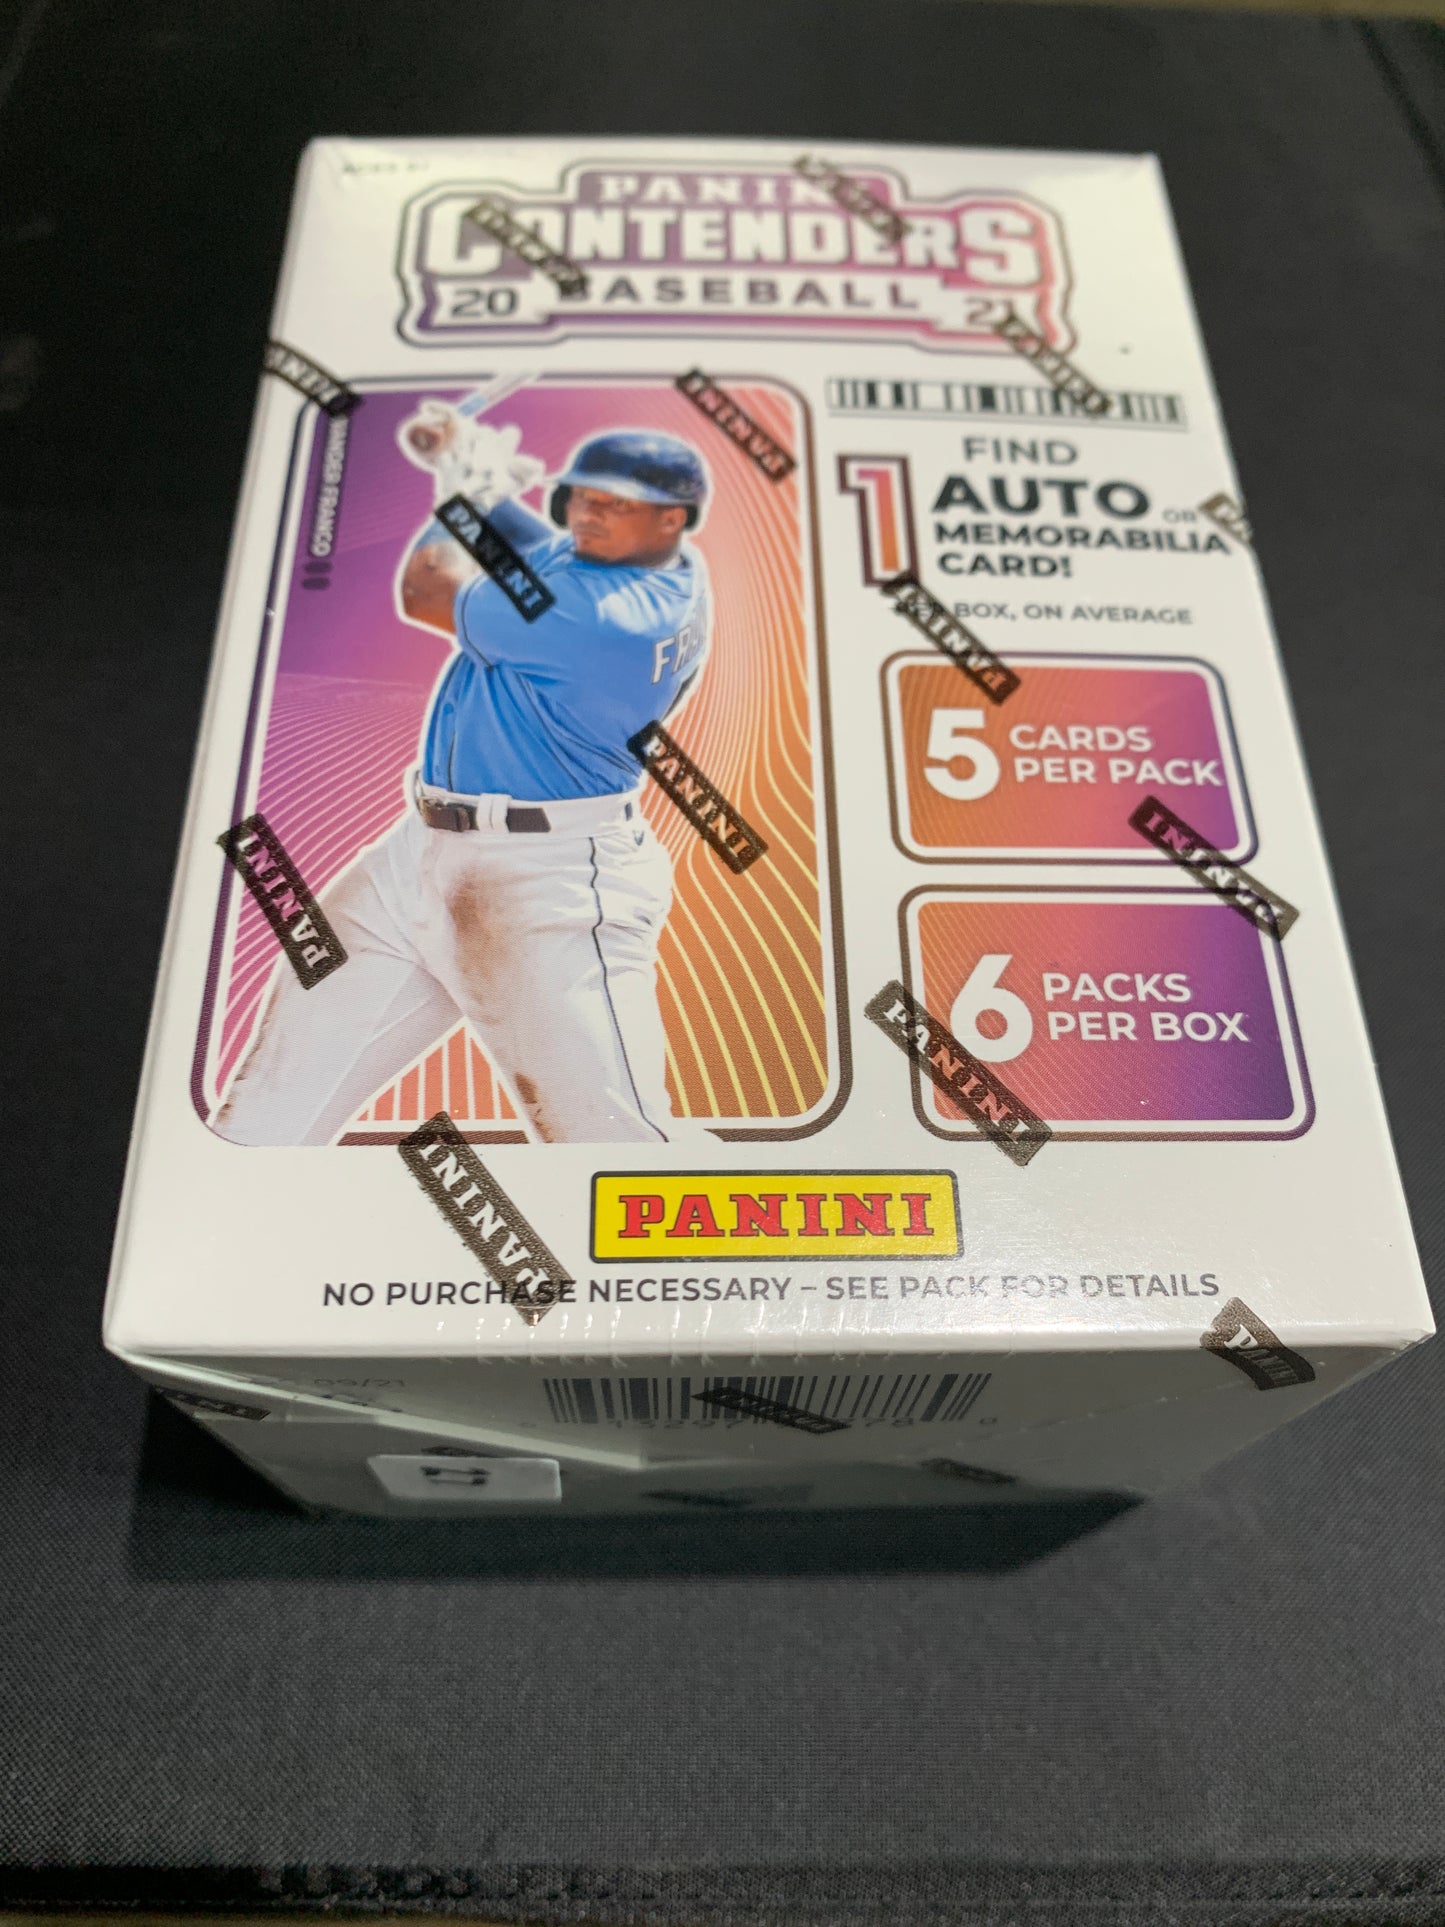 2021 Panini Contenders Baseball Trading Card Box (BLASTER) 1 Auto or Memorabilia per box